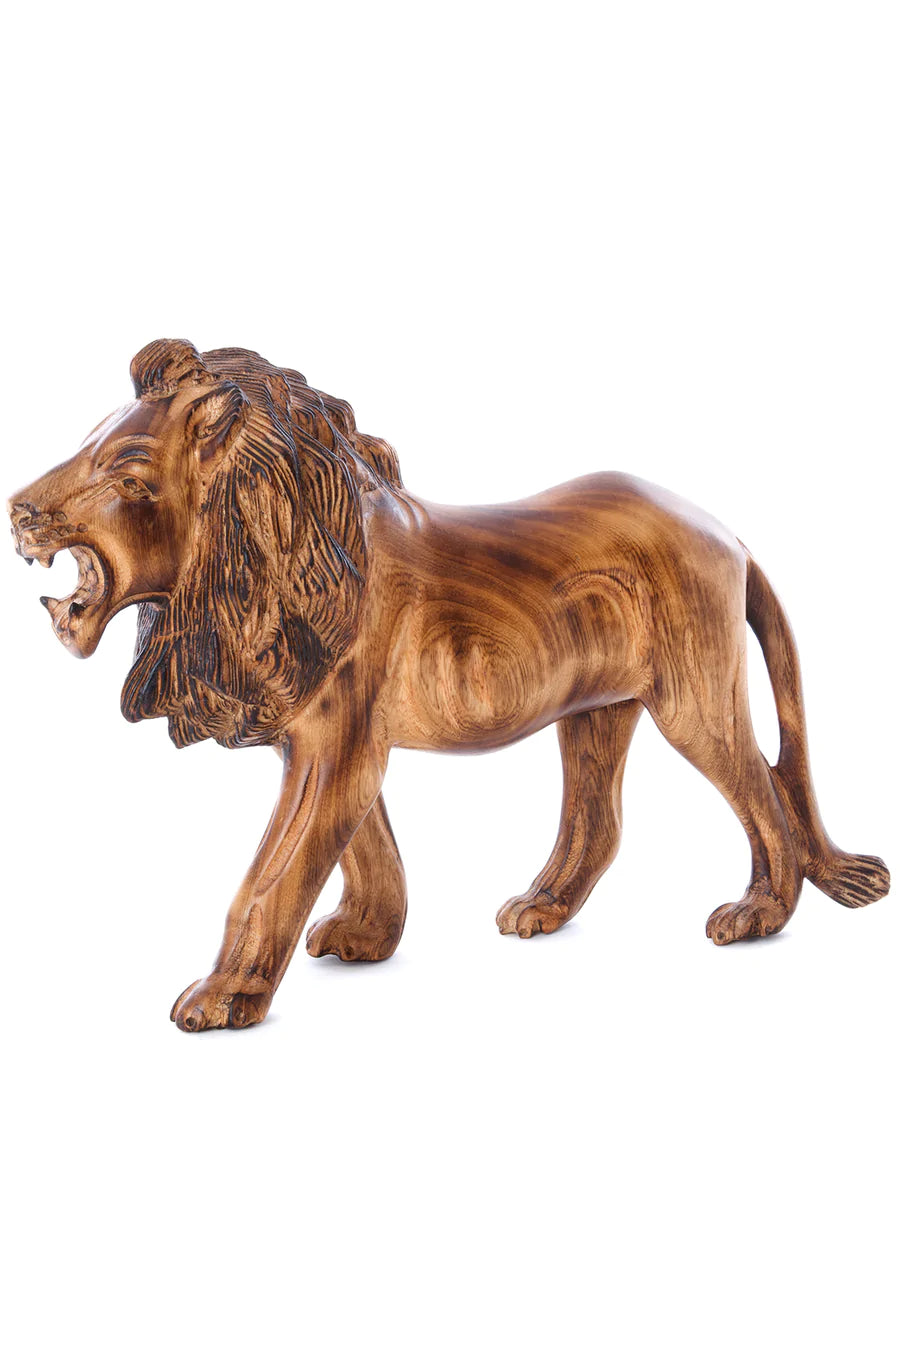 Jacaranda Lion Sculpture